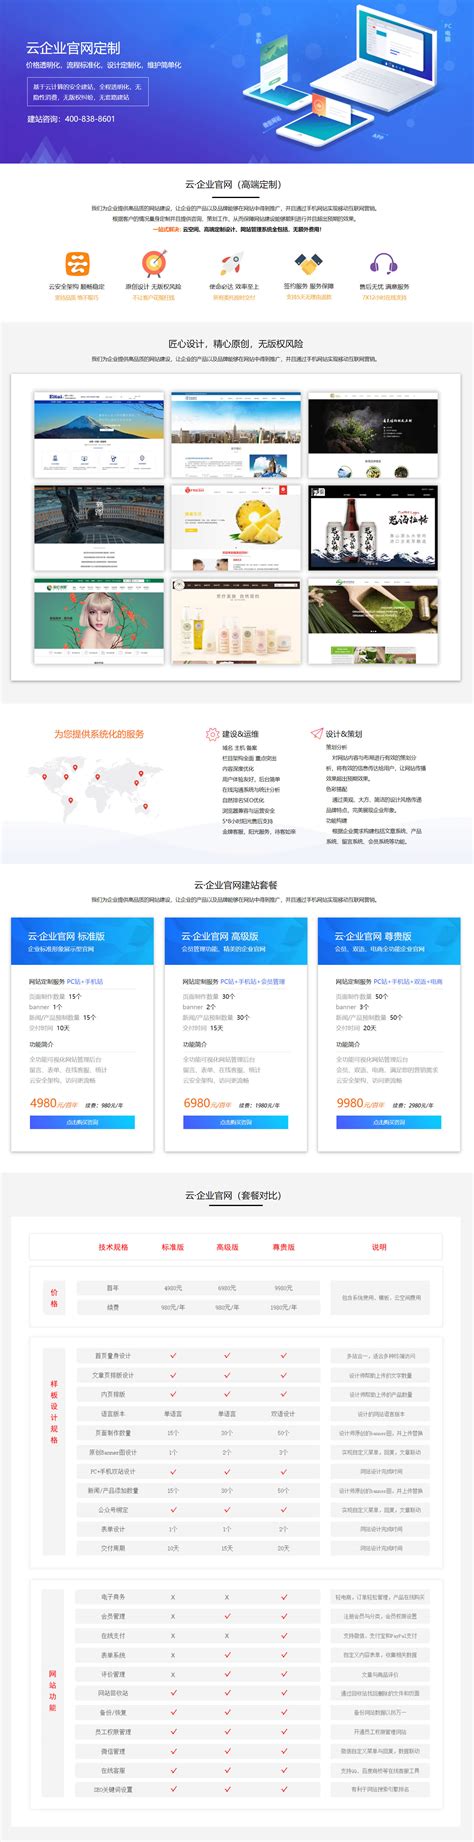 南京中小企业外贸网站建设系统